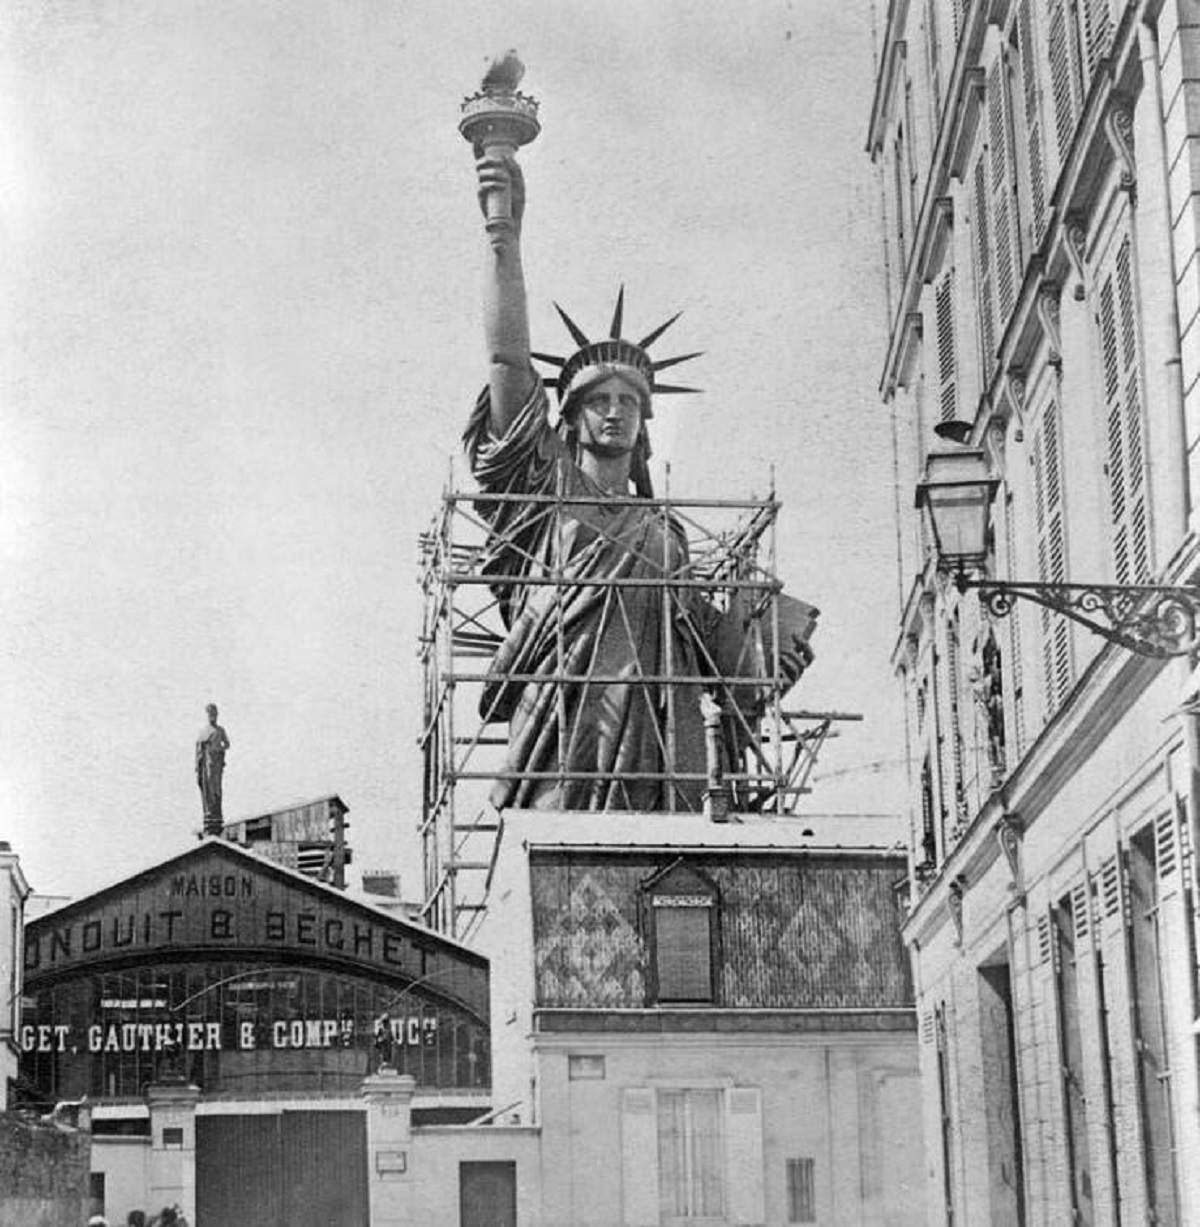 statue of liberty - Maison Inquit & Beche Ether Get, Gauthier & Compuch Xxxxxxx Witt 100000 Tex